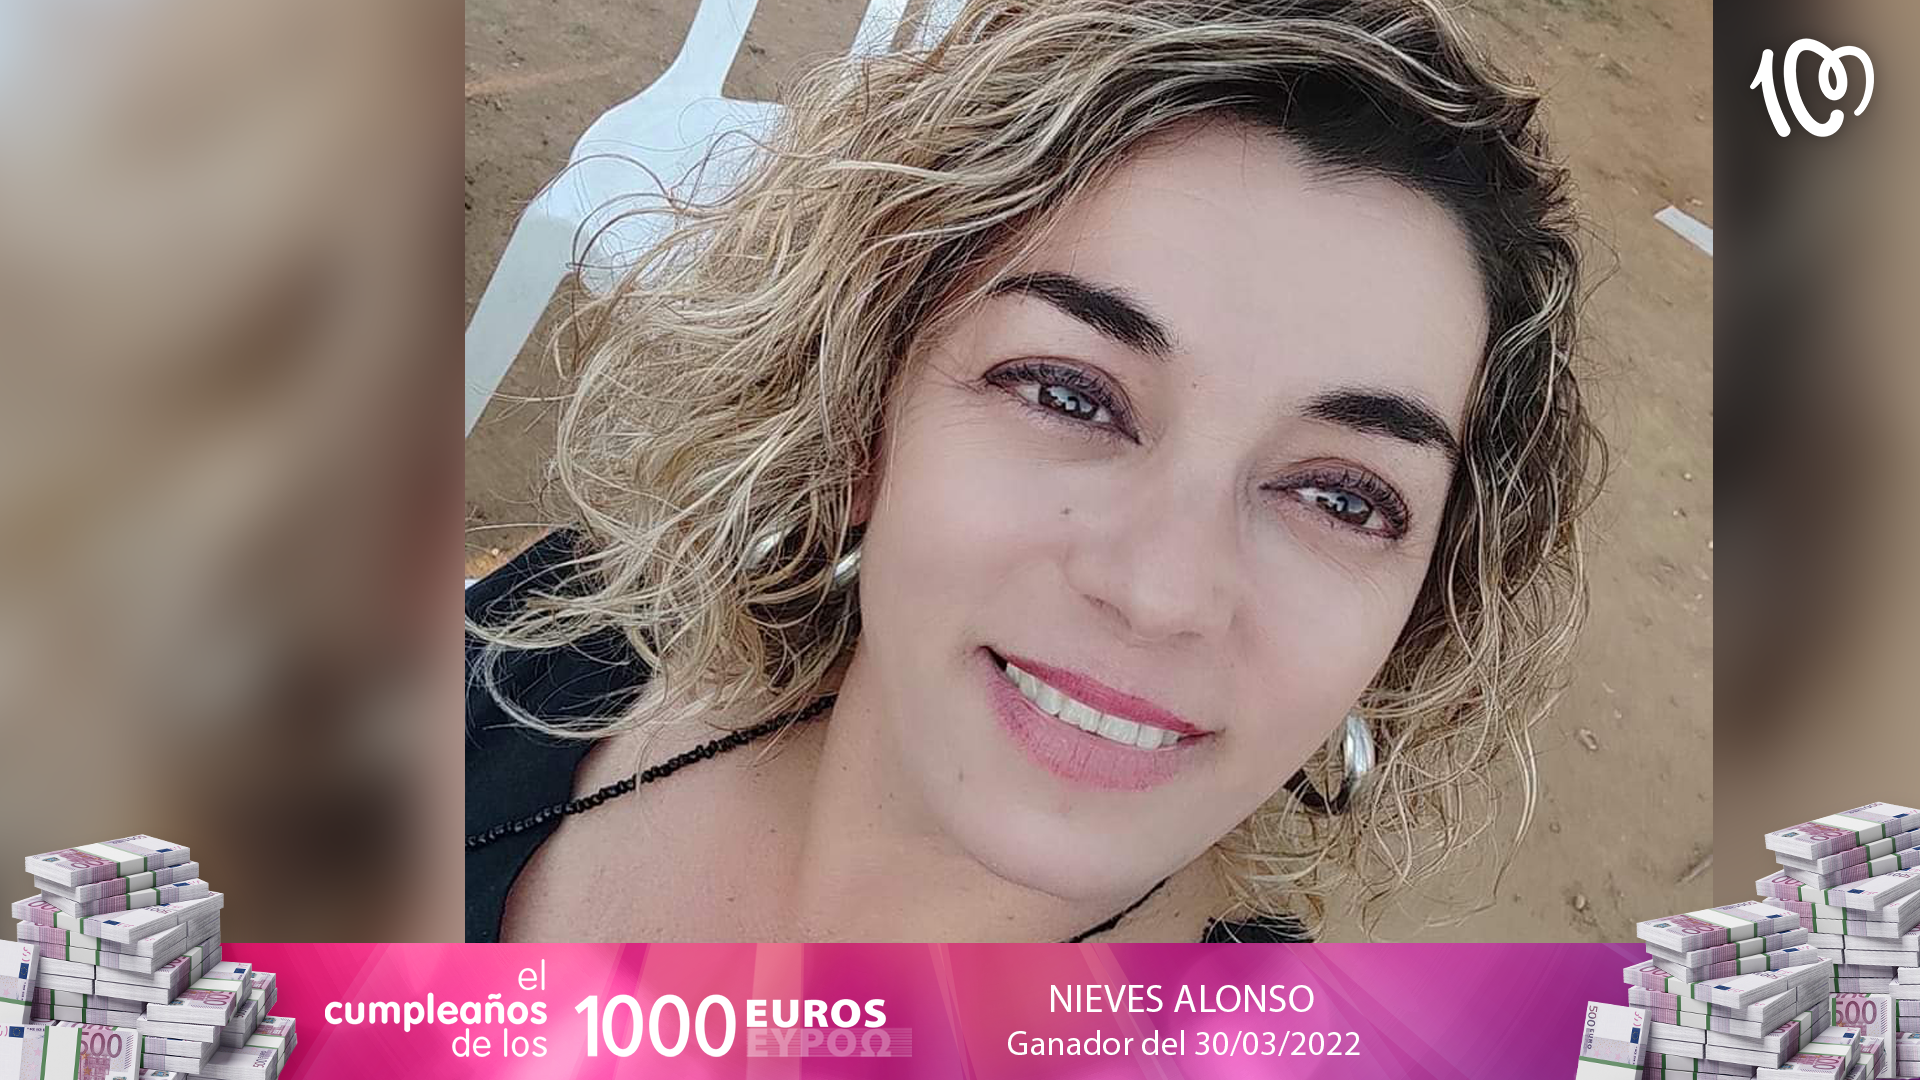 Nieves ha ganado 1.000 euros: "¡Después de muchos años lo he conseguido!"